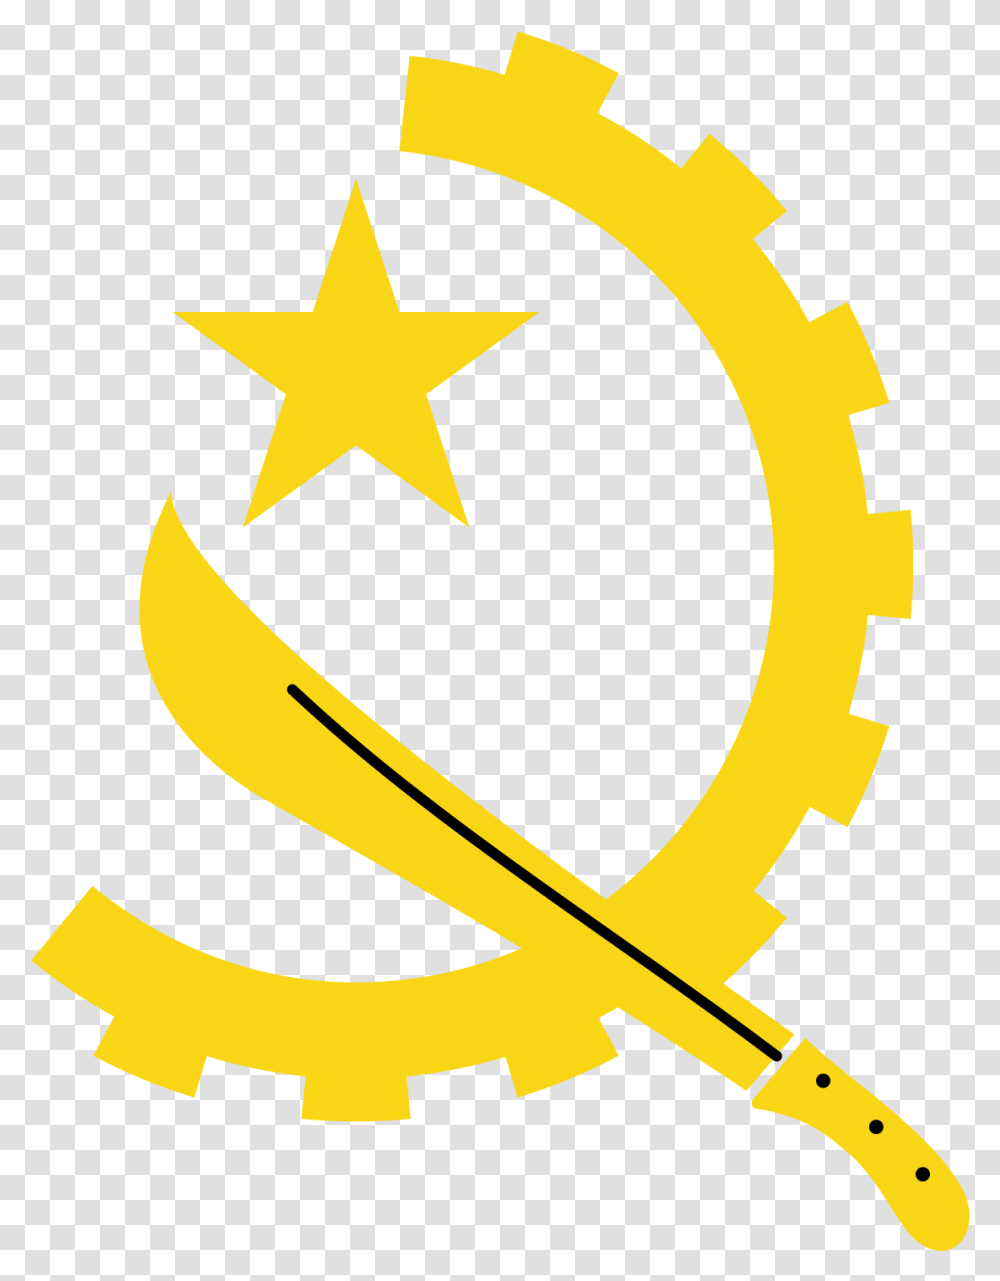 Angola Flag Symbol, Axe, Tool, Star Symbol Transparent Png